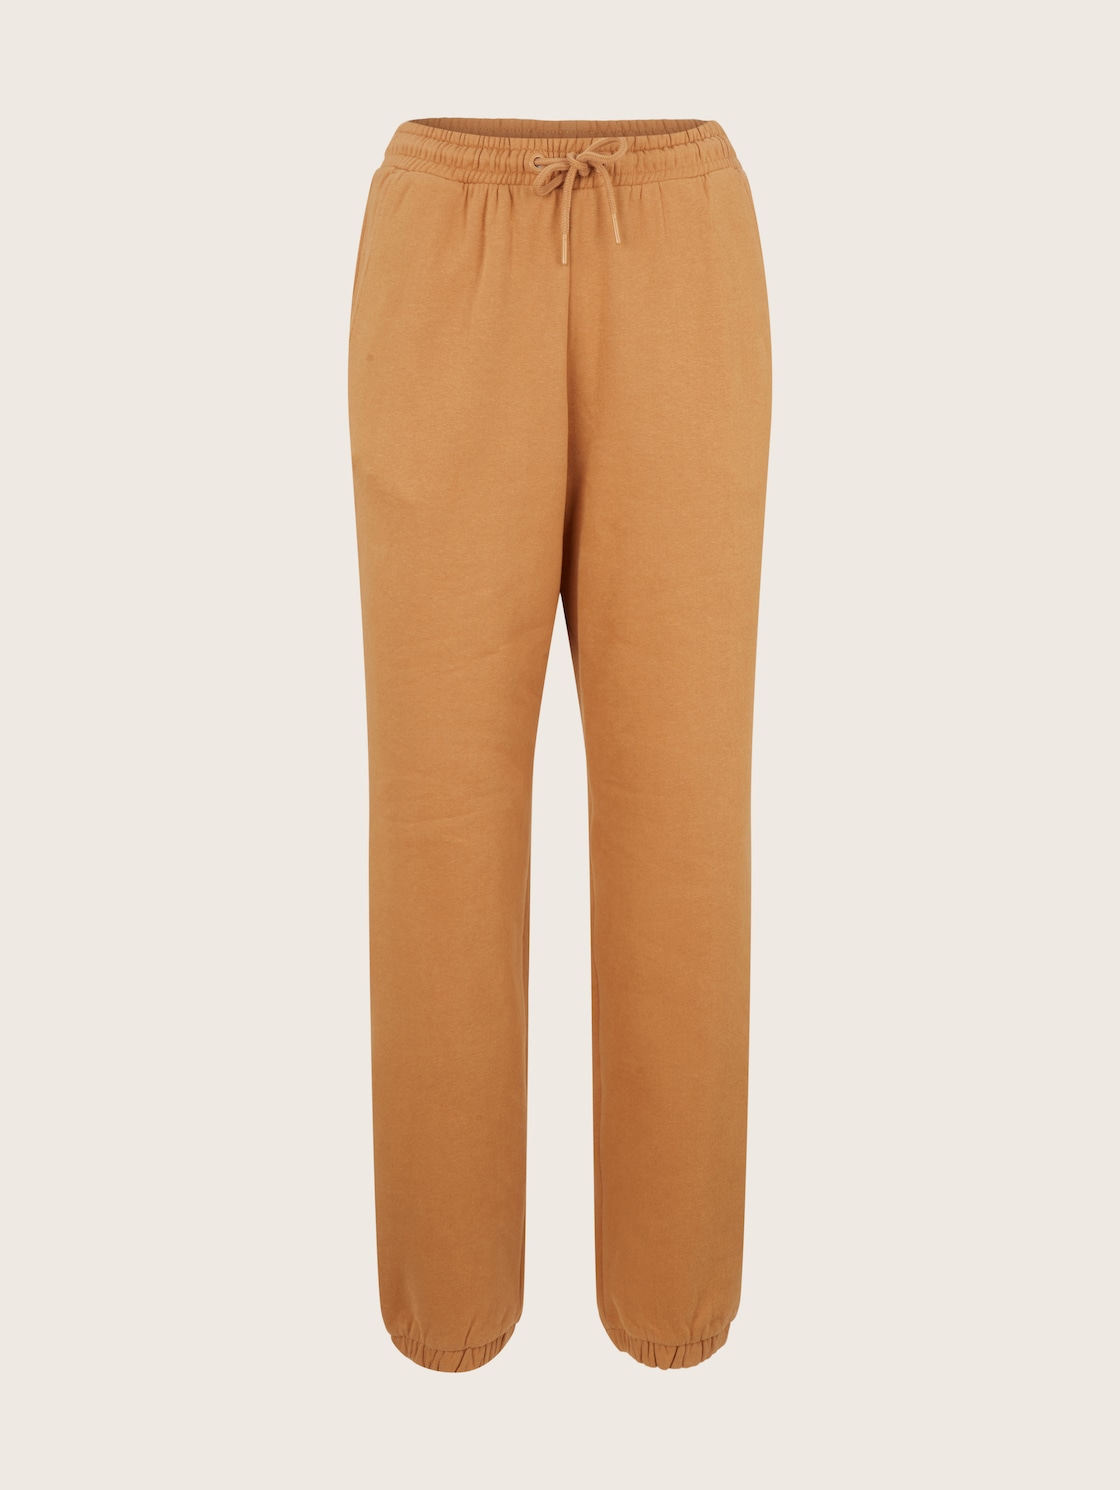 Спортивные брюки женские Tom Tailor Denim 1034512 коричневые XL